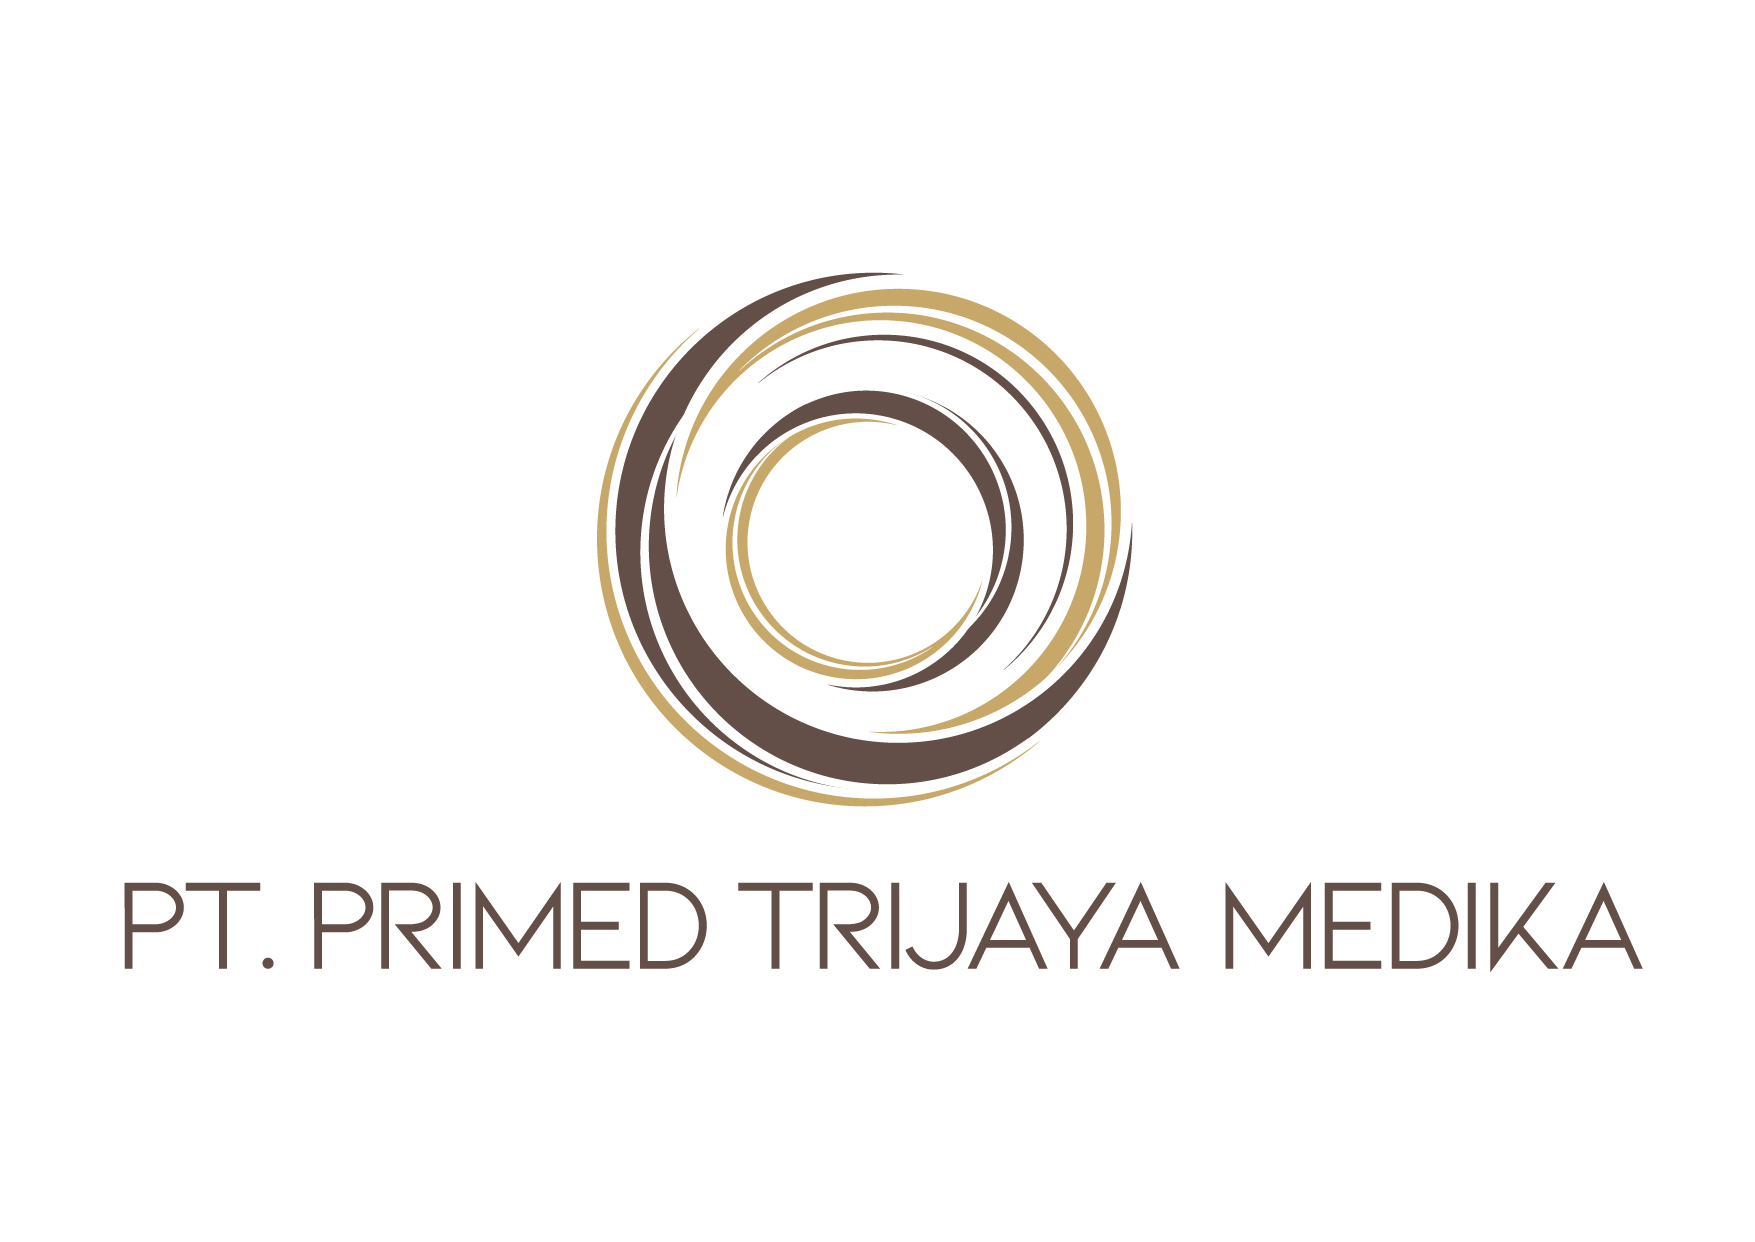 Lowongan pekerjaan Asisten Apoteker di Primed Trijaya Medika